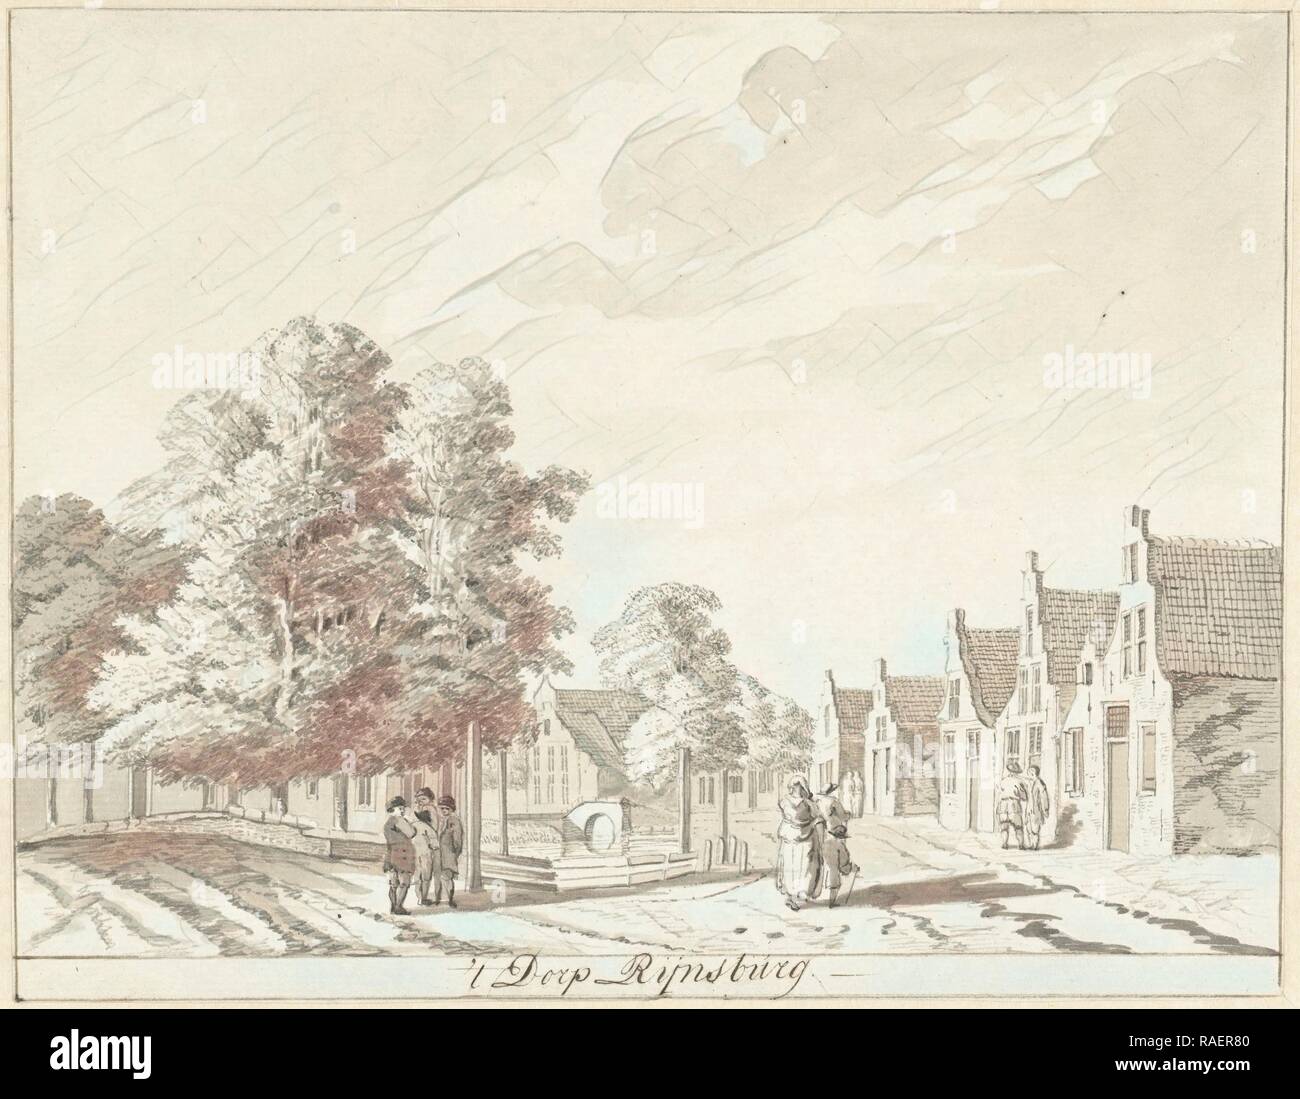 Le village Rijnsburg Pays-bas, Hendrik Tavenier, 177. Repensé par Gibon. L'art classique avec une touche moderne repensé Banque D'Images